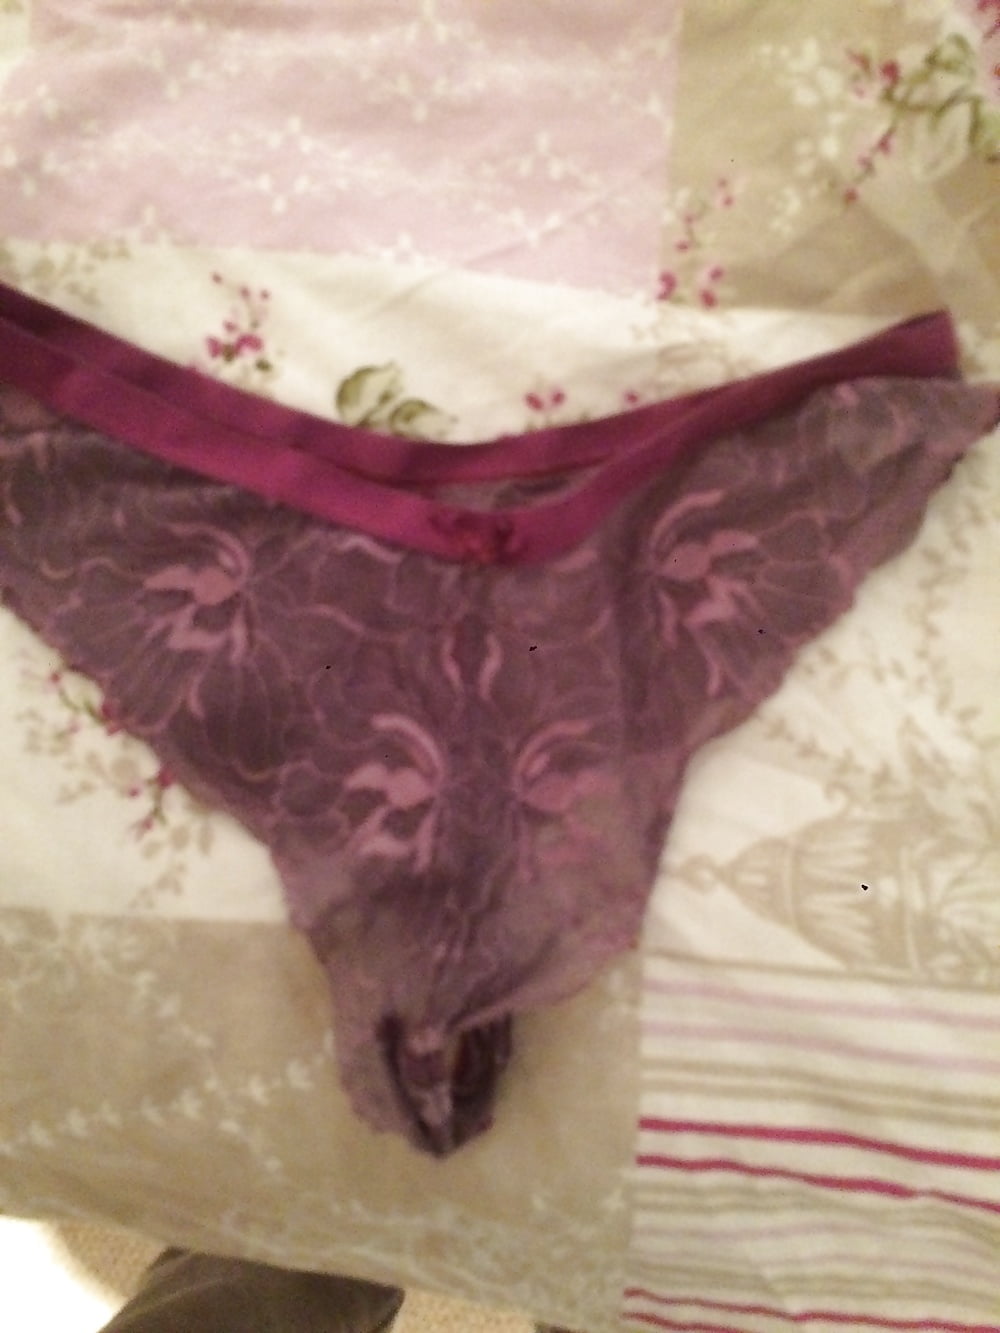 Gf friends stolen thong panties (3/4)